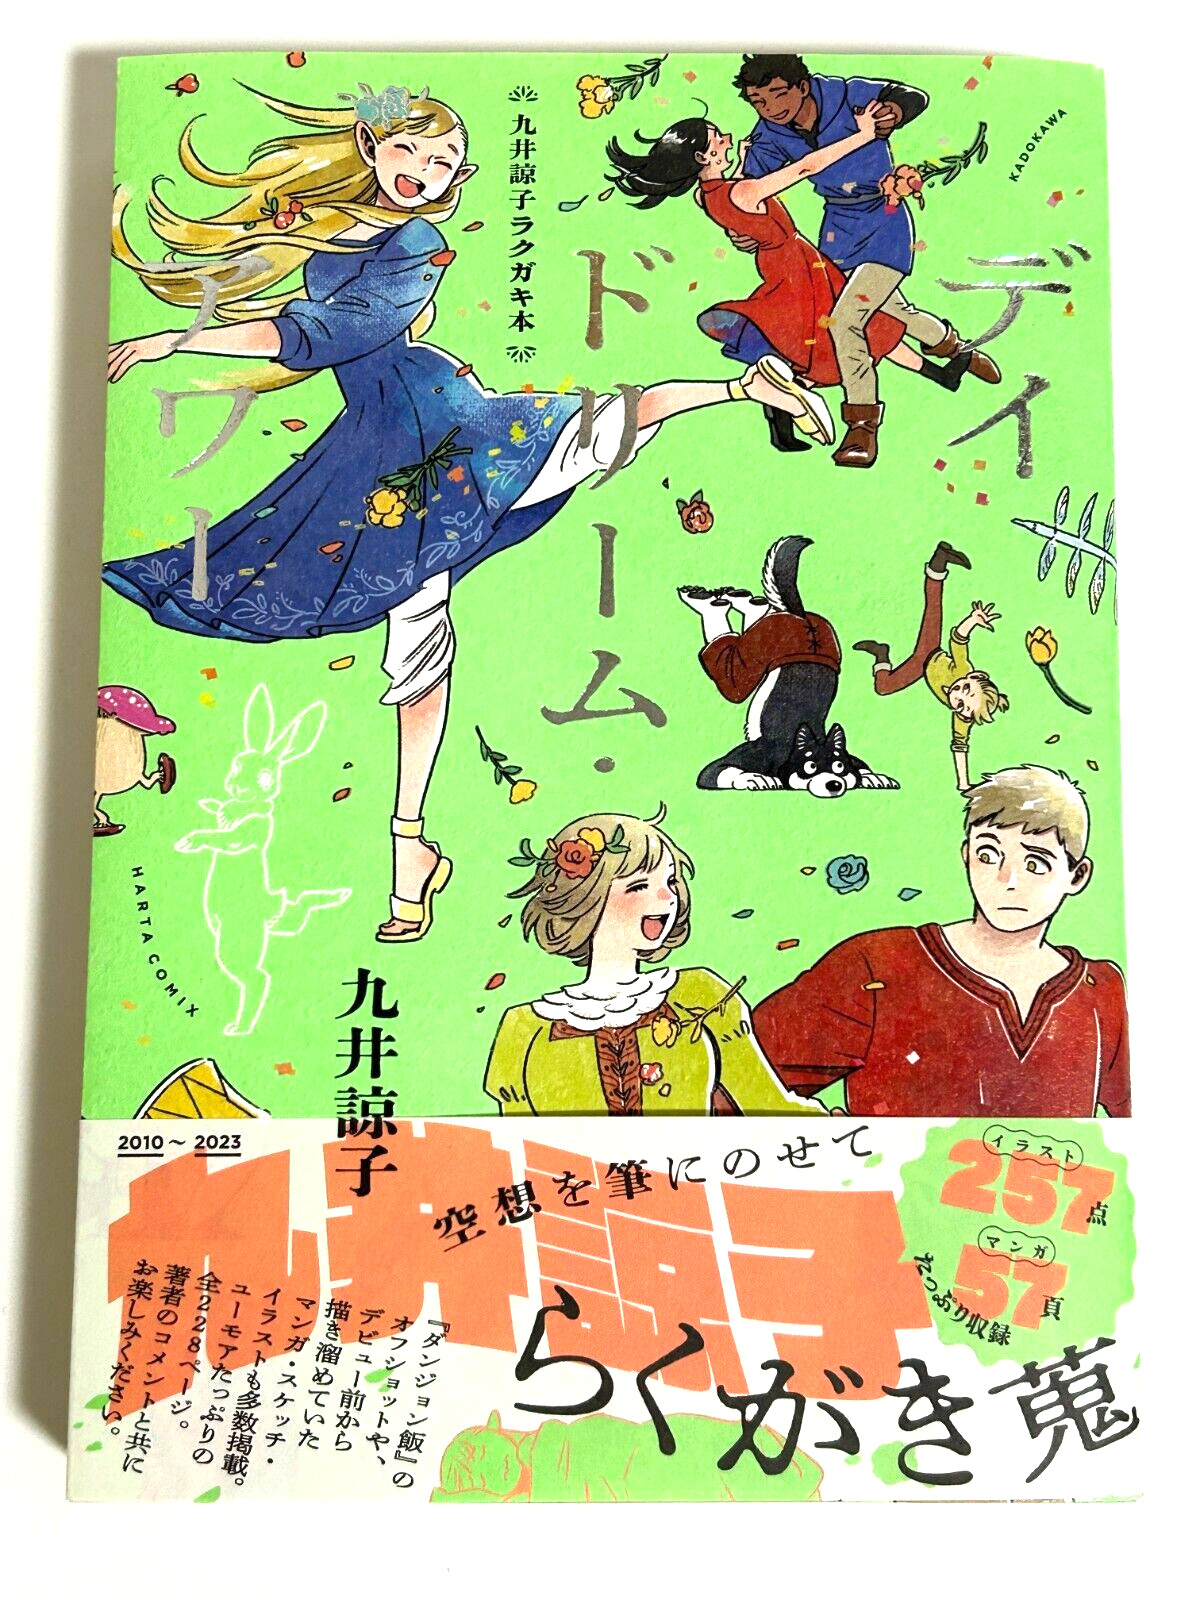 New Ryoko Kui Delicious in Dungeon Illustration Art Book Day Dream Hour RAKUGAKI